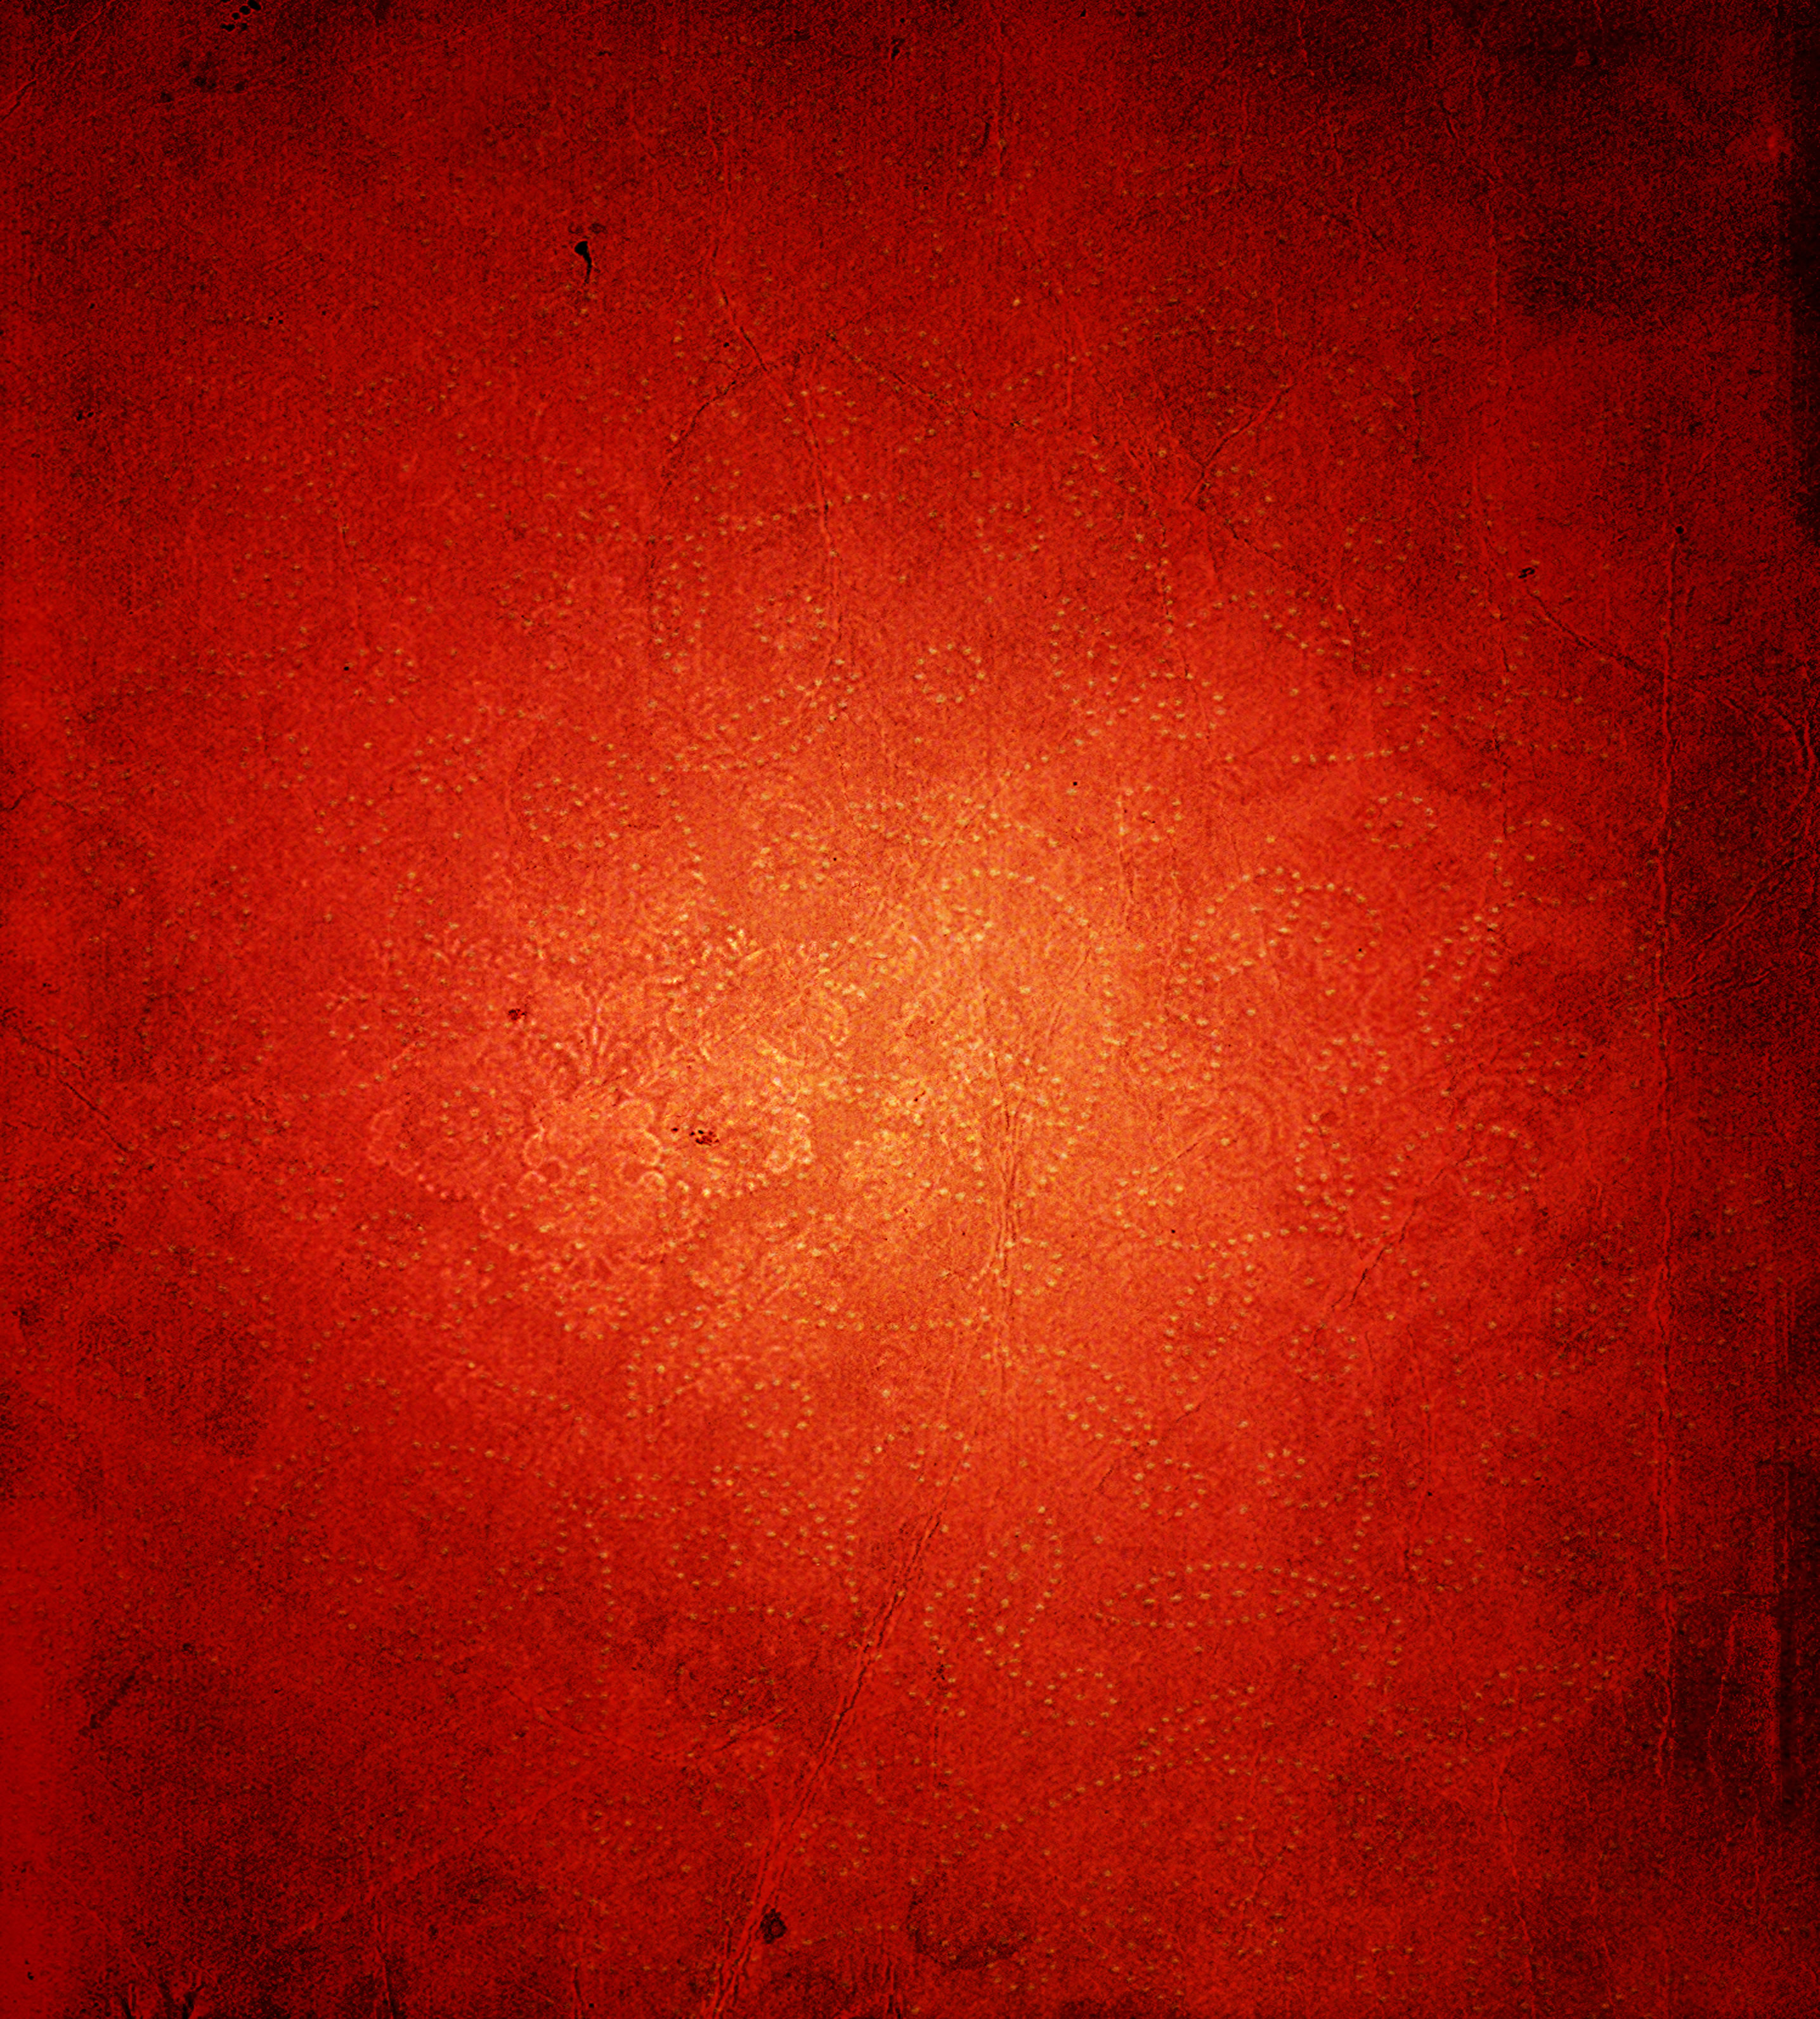 Với sơn vân nổi màu đỏ, tưởng chừng như những điểm nhấn trên bức tường đã cất lên tiếng nói riêng của chúng. Khi nhìn vào nó, bạn sẽ nghe được những câu chuyện kể về sự táo bạo và cá tính. Hãy để chúng cùng làm nên một không gian độc đáo cho căn phòng của bạn.